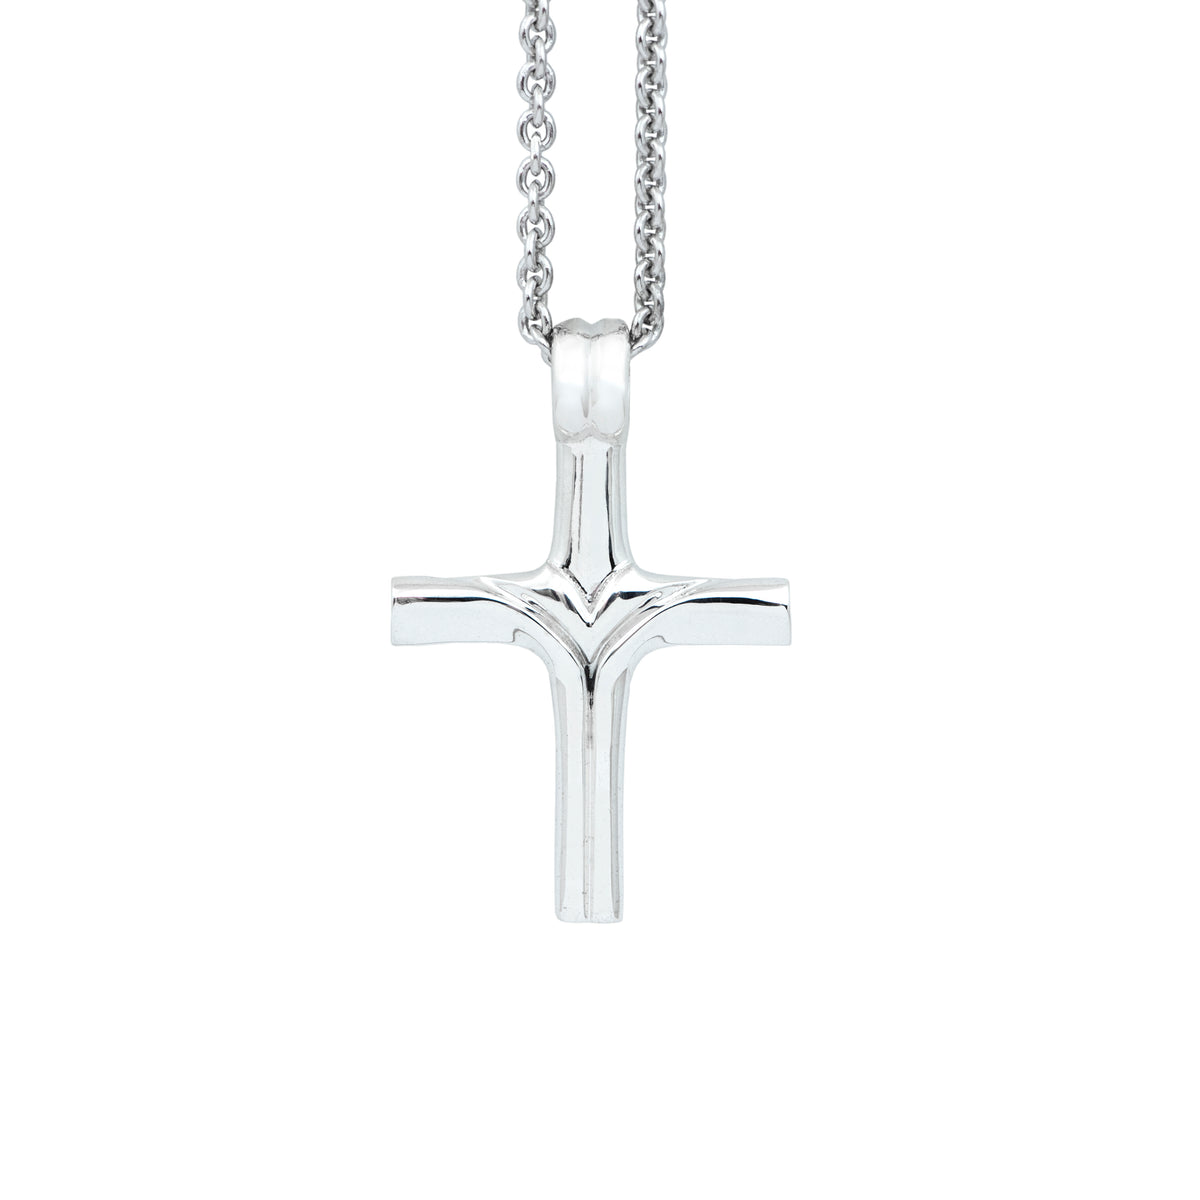 Silver cross designer pendant with silver cable chain. Cristina Tamames Jewelry Designer